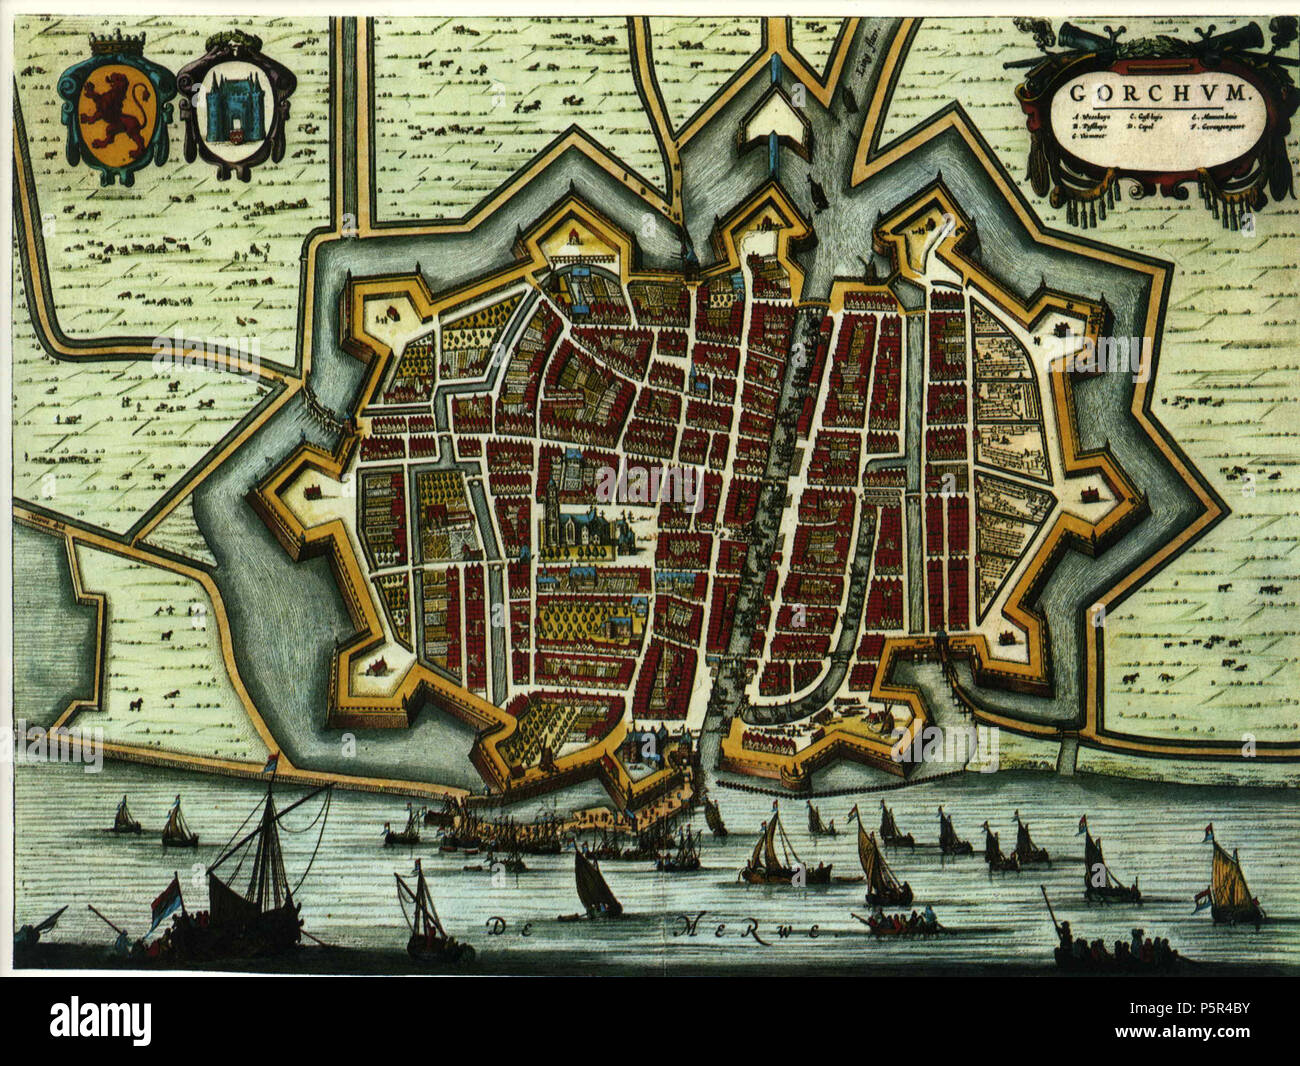 N/A. Gorkum from 'Blaeu's Toonneel der Steden' (Dutch city maps, Edited by Willem and Joan Blaeu), 1652. 1652. Willem and Joan Blaeu 207 Blaeu 1652 - Gorkum Stock Photo